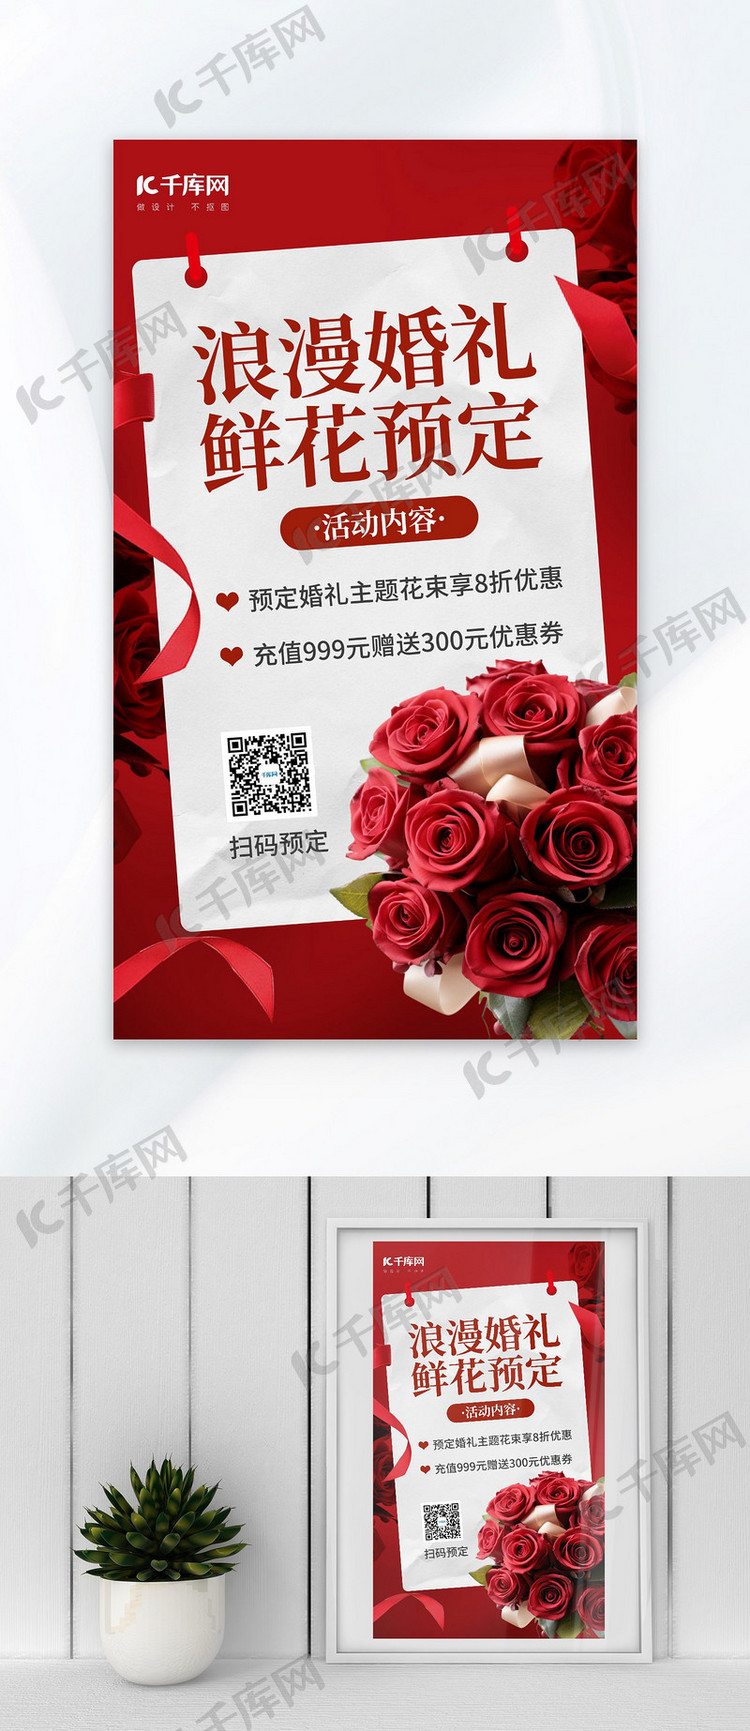 婚礼鲜花预定花店促销红色AIGC模板广告营销海报